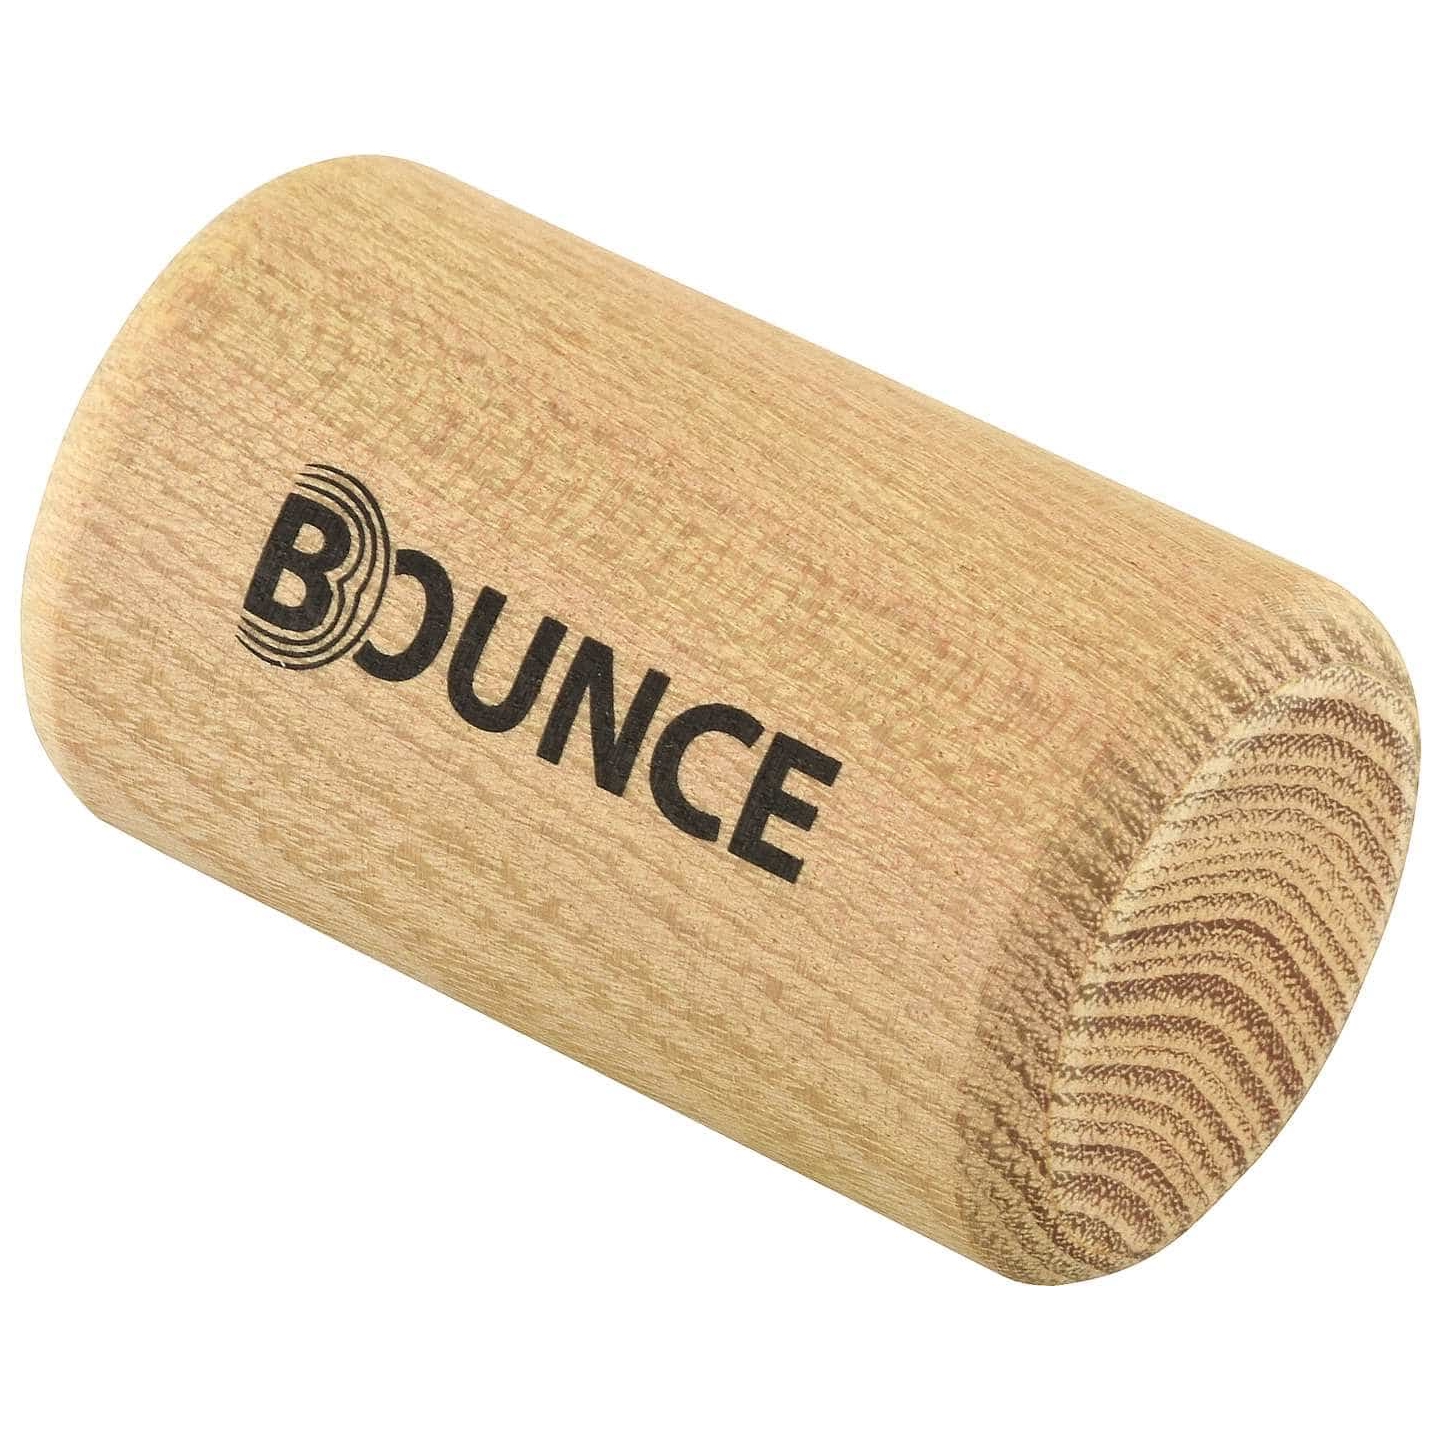 Bounce Mini Shaker - Medium